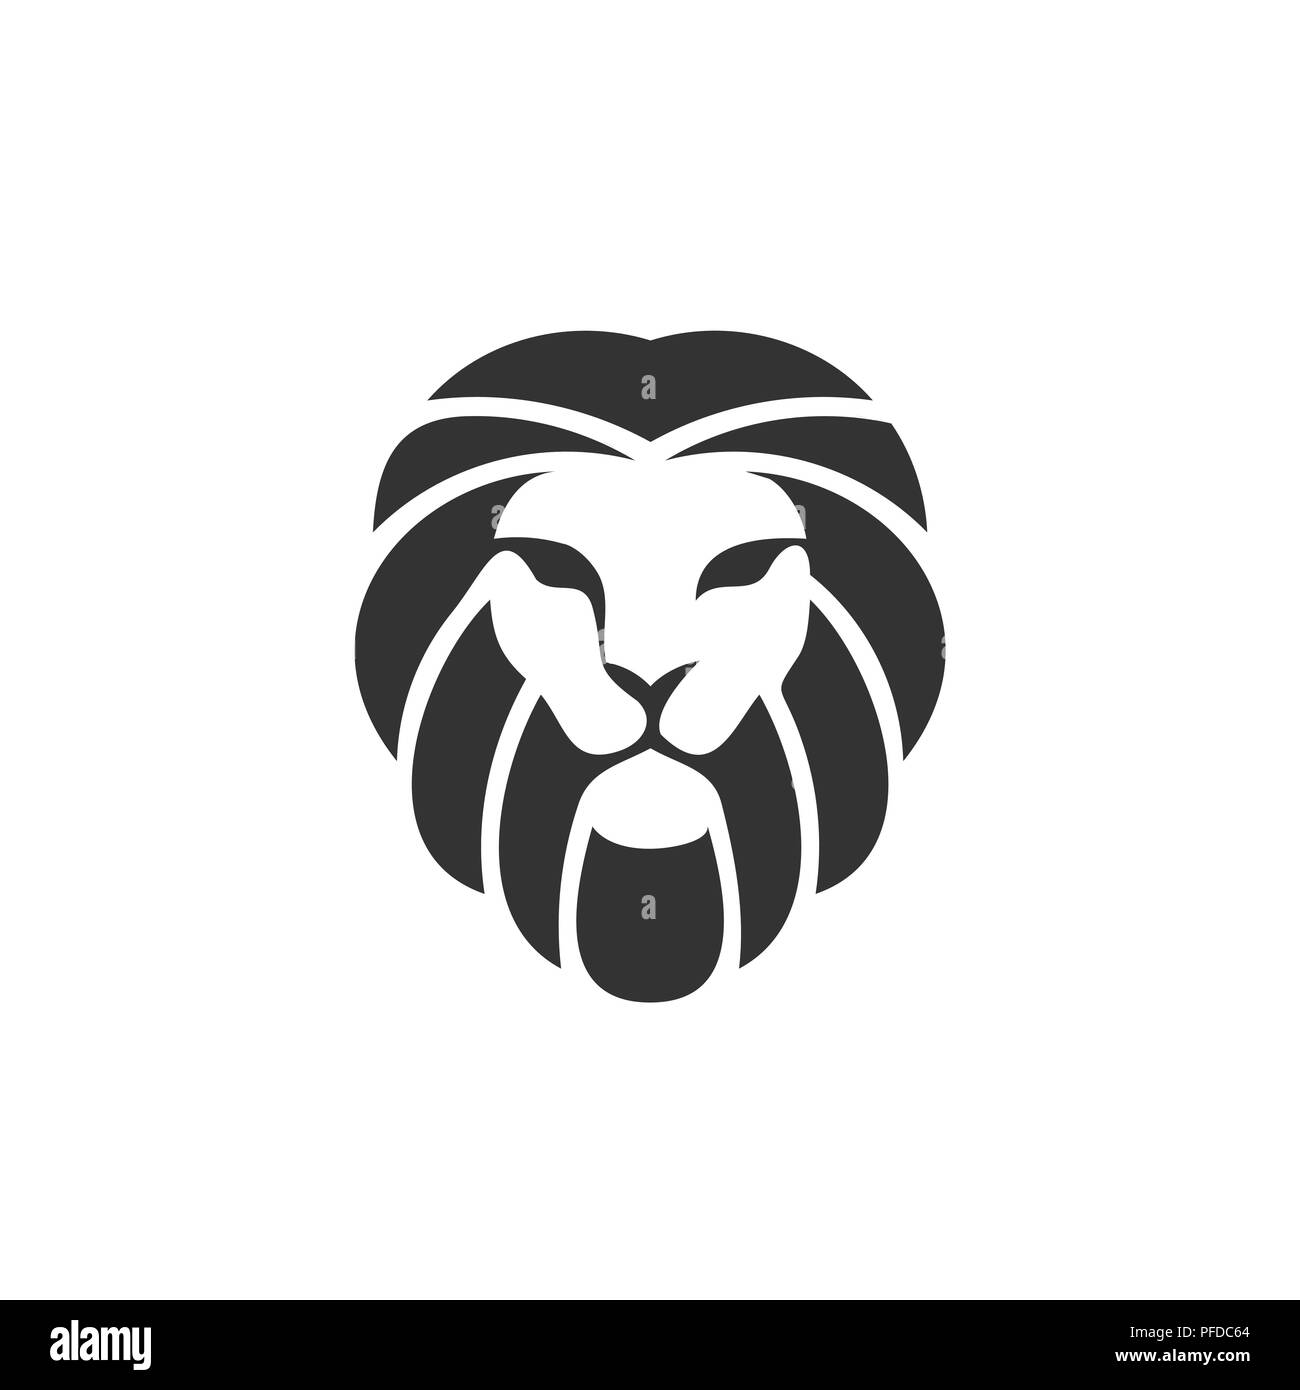 Plat simple création logo emblème lion king Lion, vecteur modèle de conception de logo ou icône. faune zoo. Illustration de Vecteur